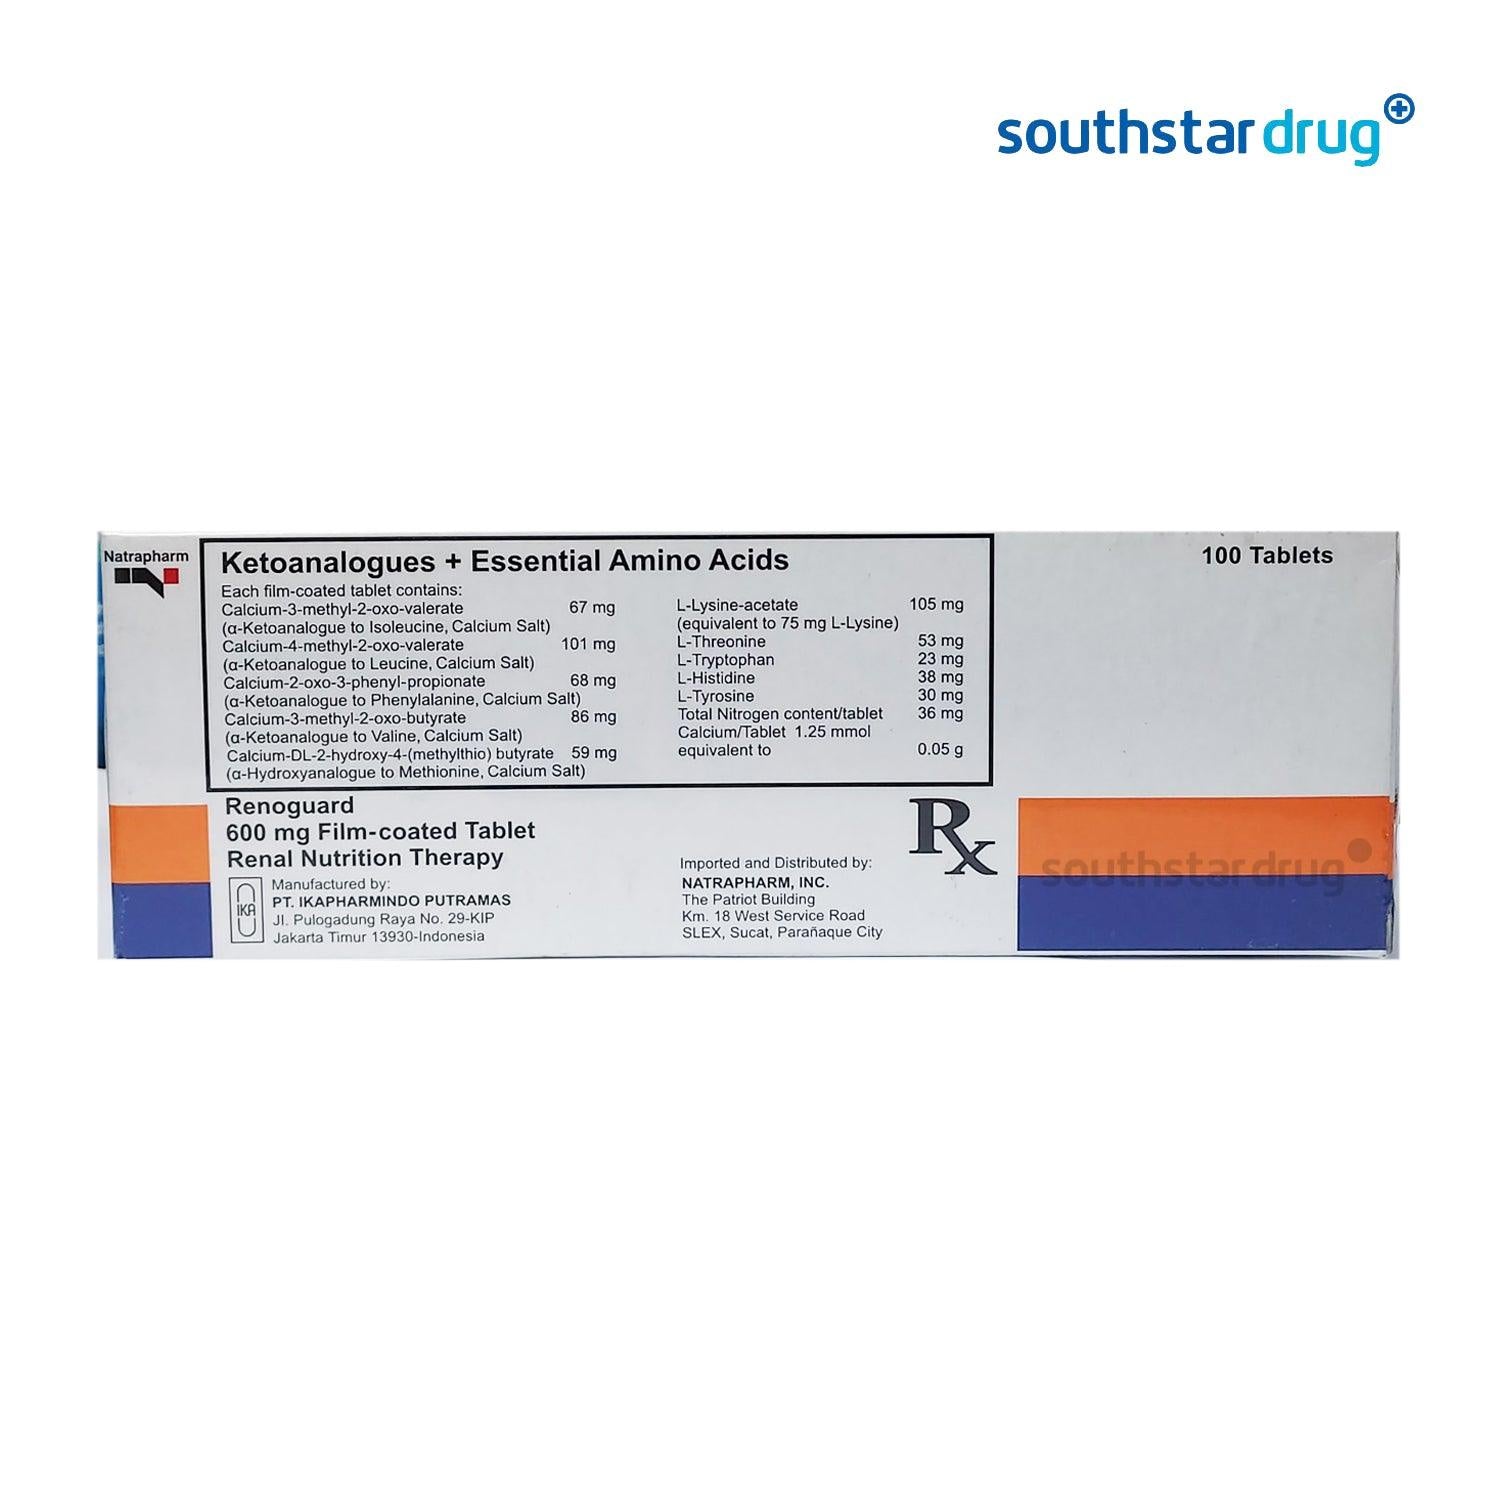 Rx: Renoguard Tablet - Southstar Drug